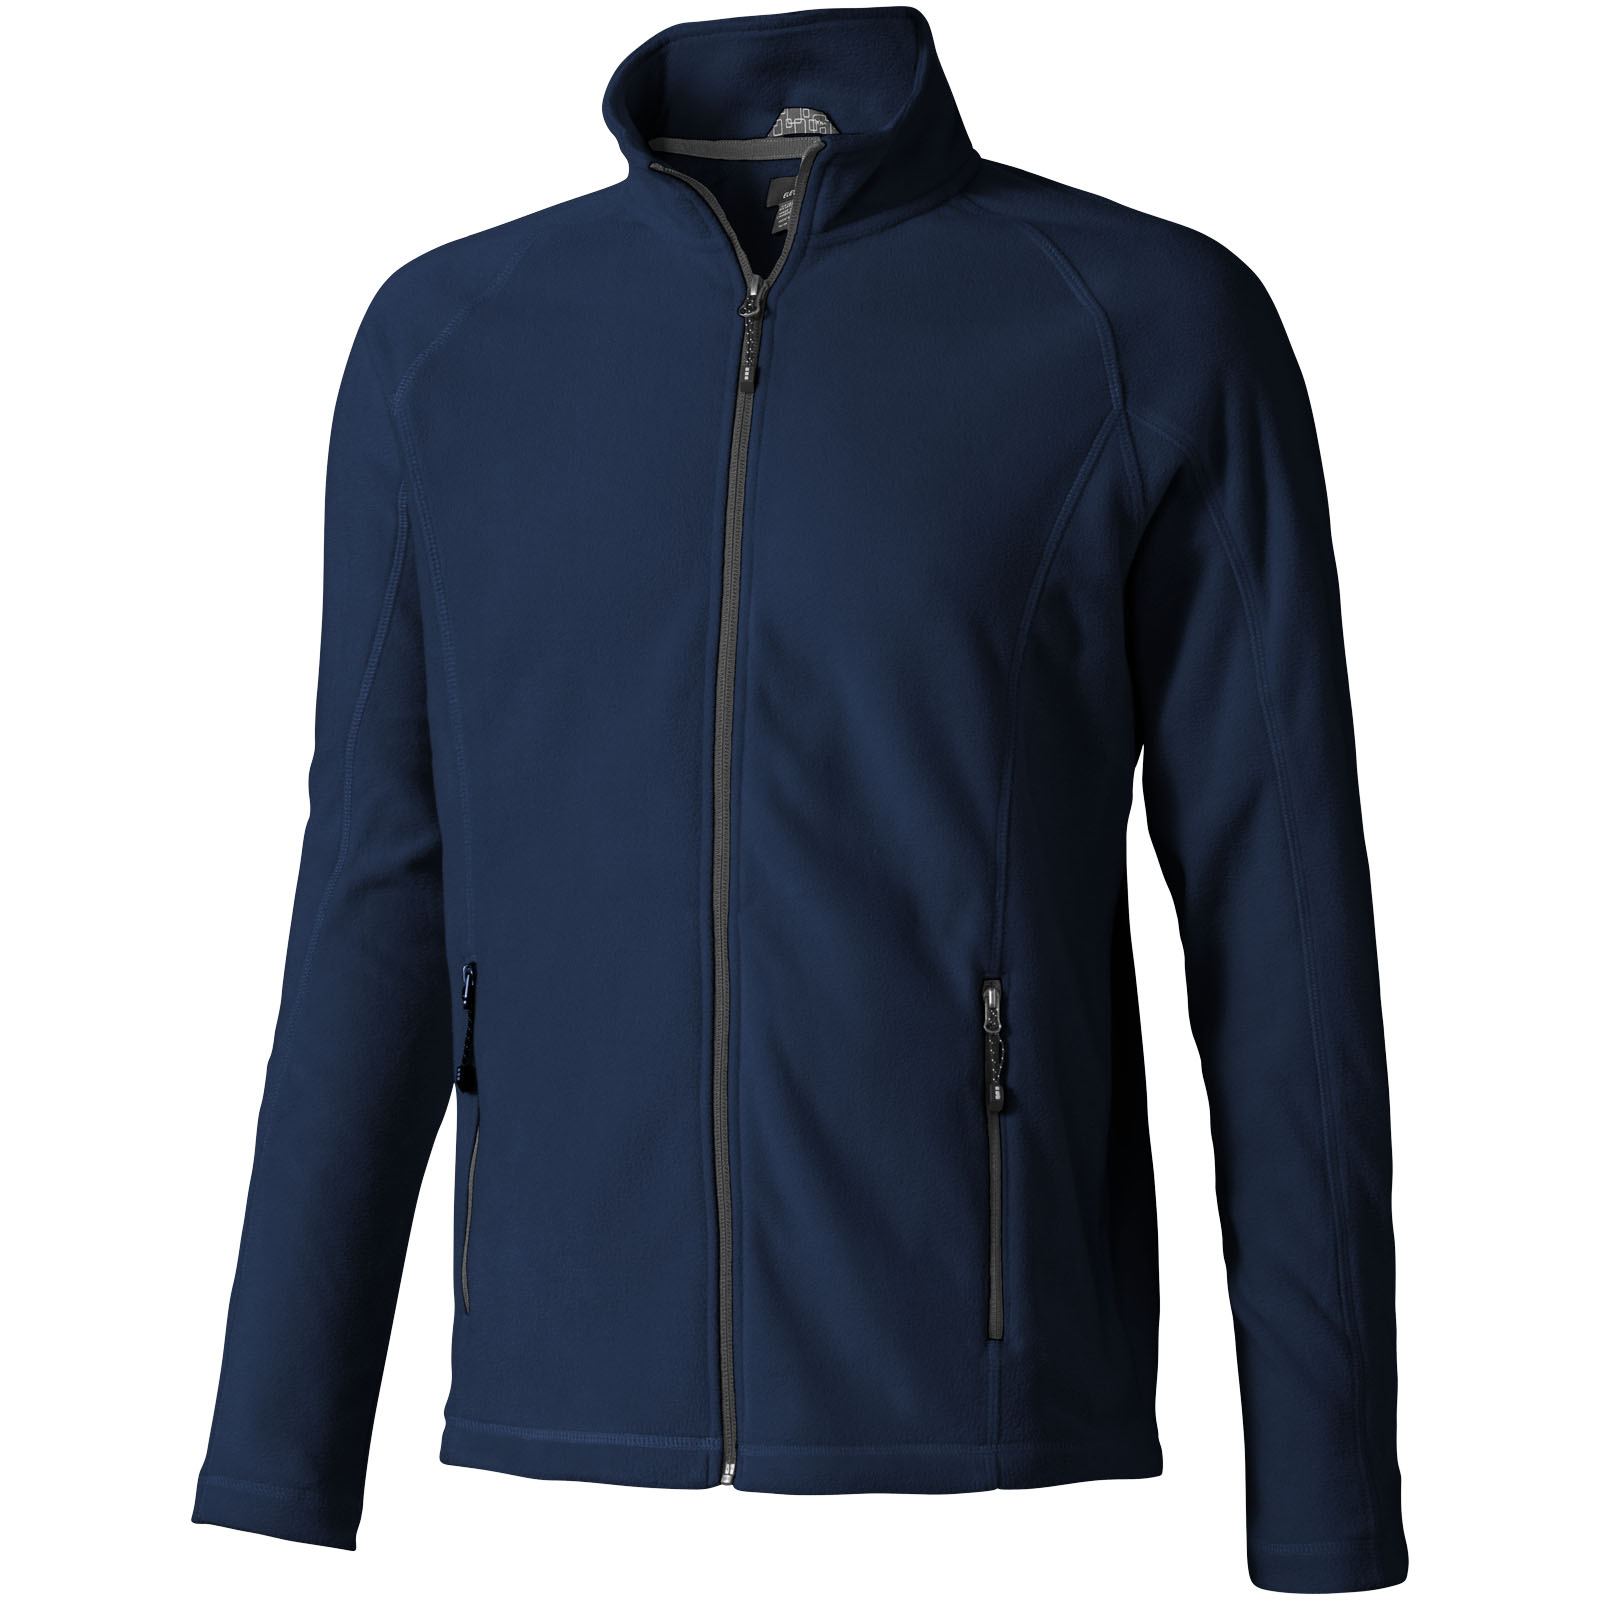 Advertising Fleece - Rixford men's full zip fleece jacket - 0